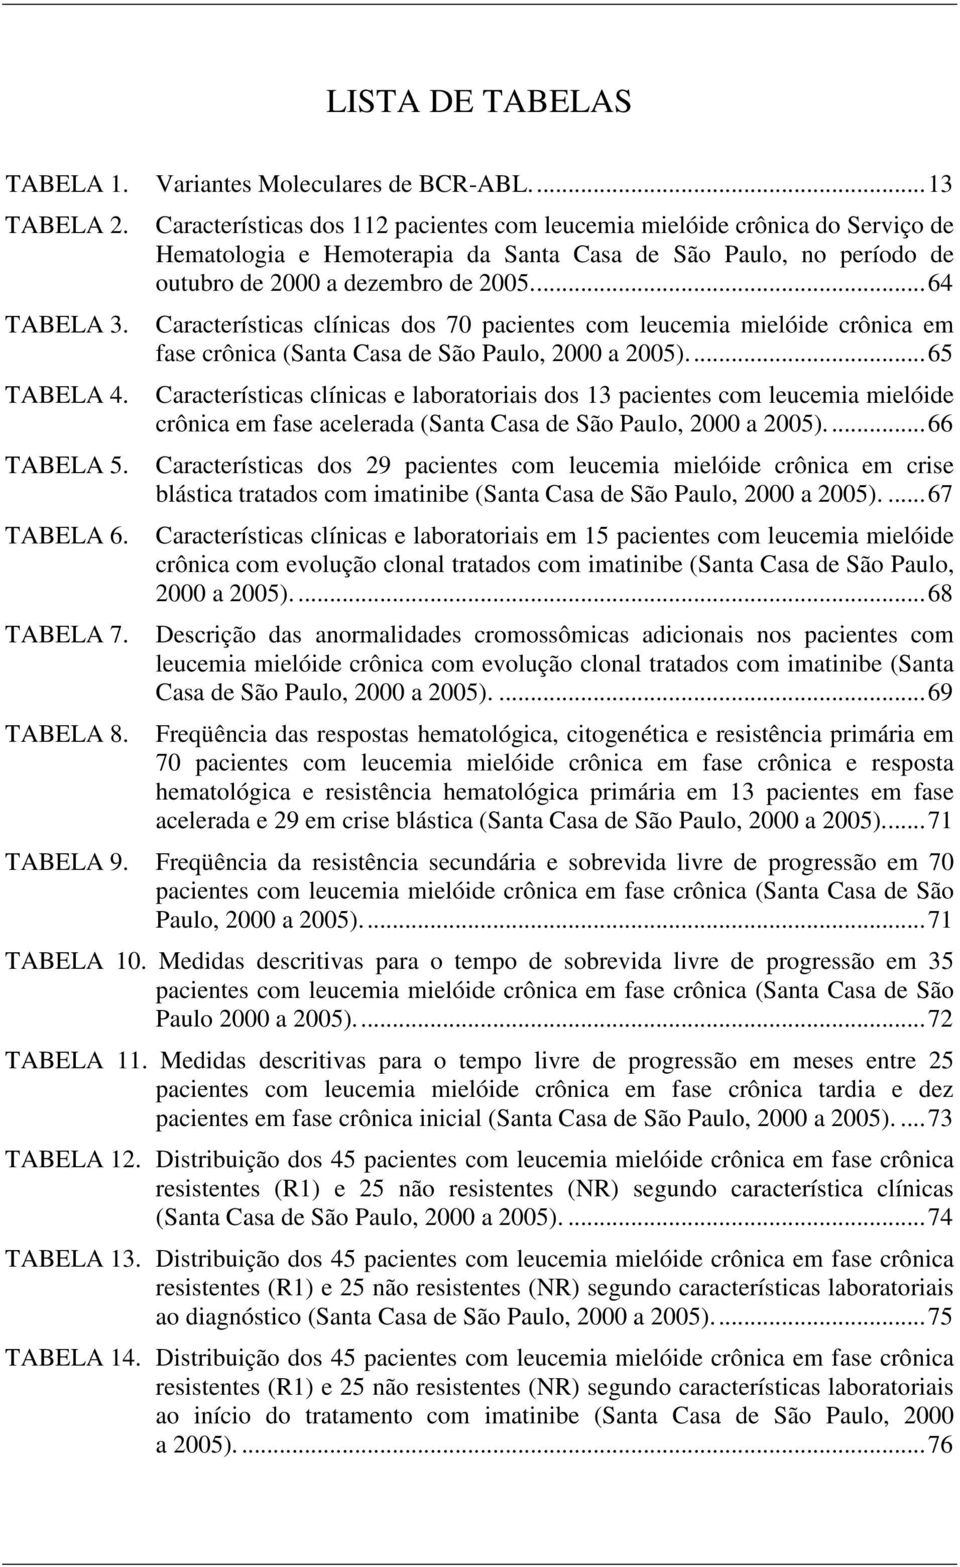 ..64 Características clínicas dos 70 pacientes com leucemia mielóide crônica em fase crônica (Santa Casa de São Paulo, 2000 a 2005).